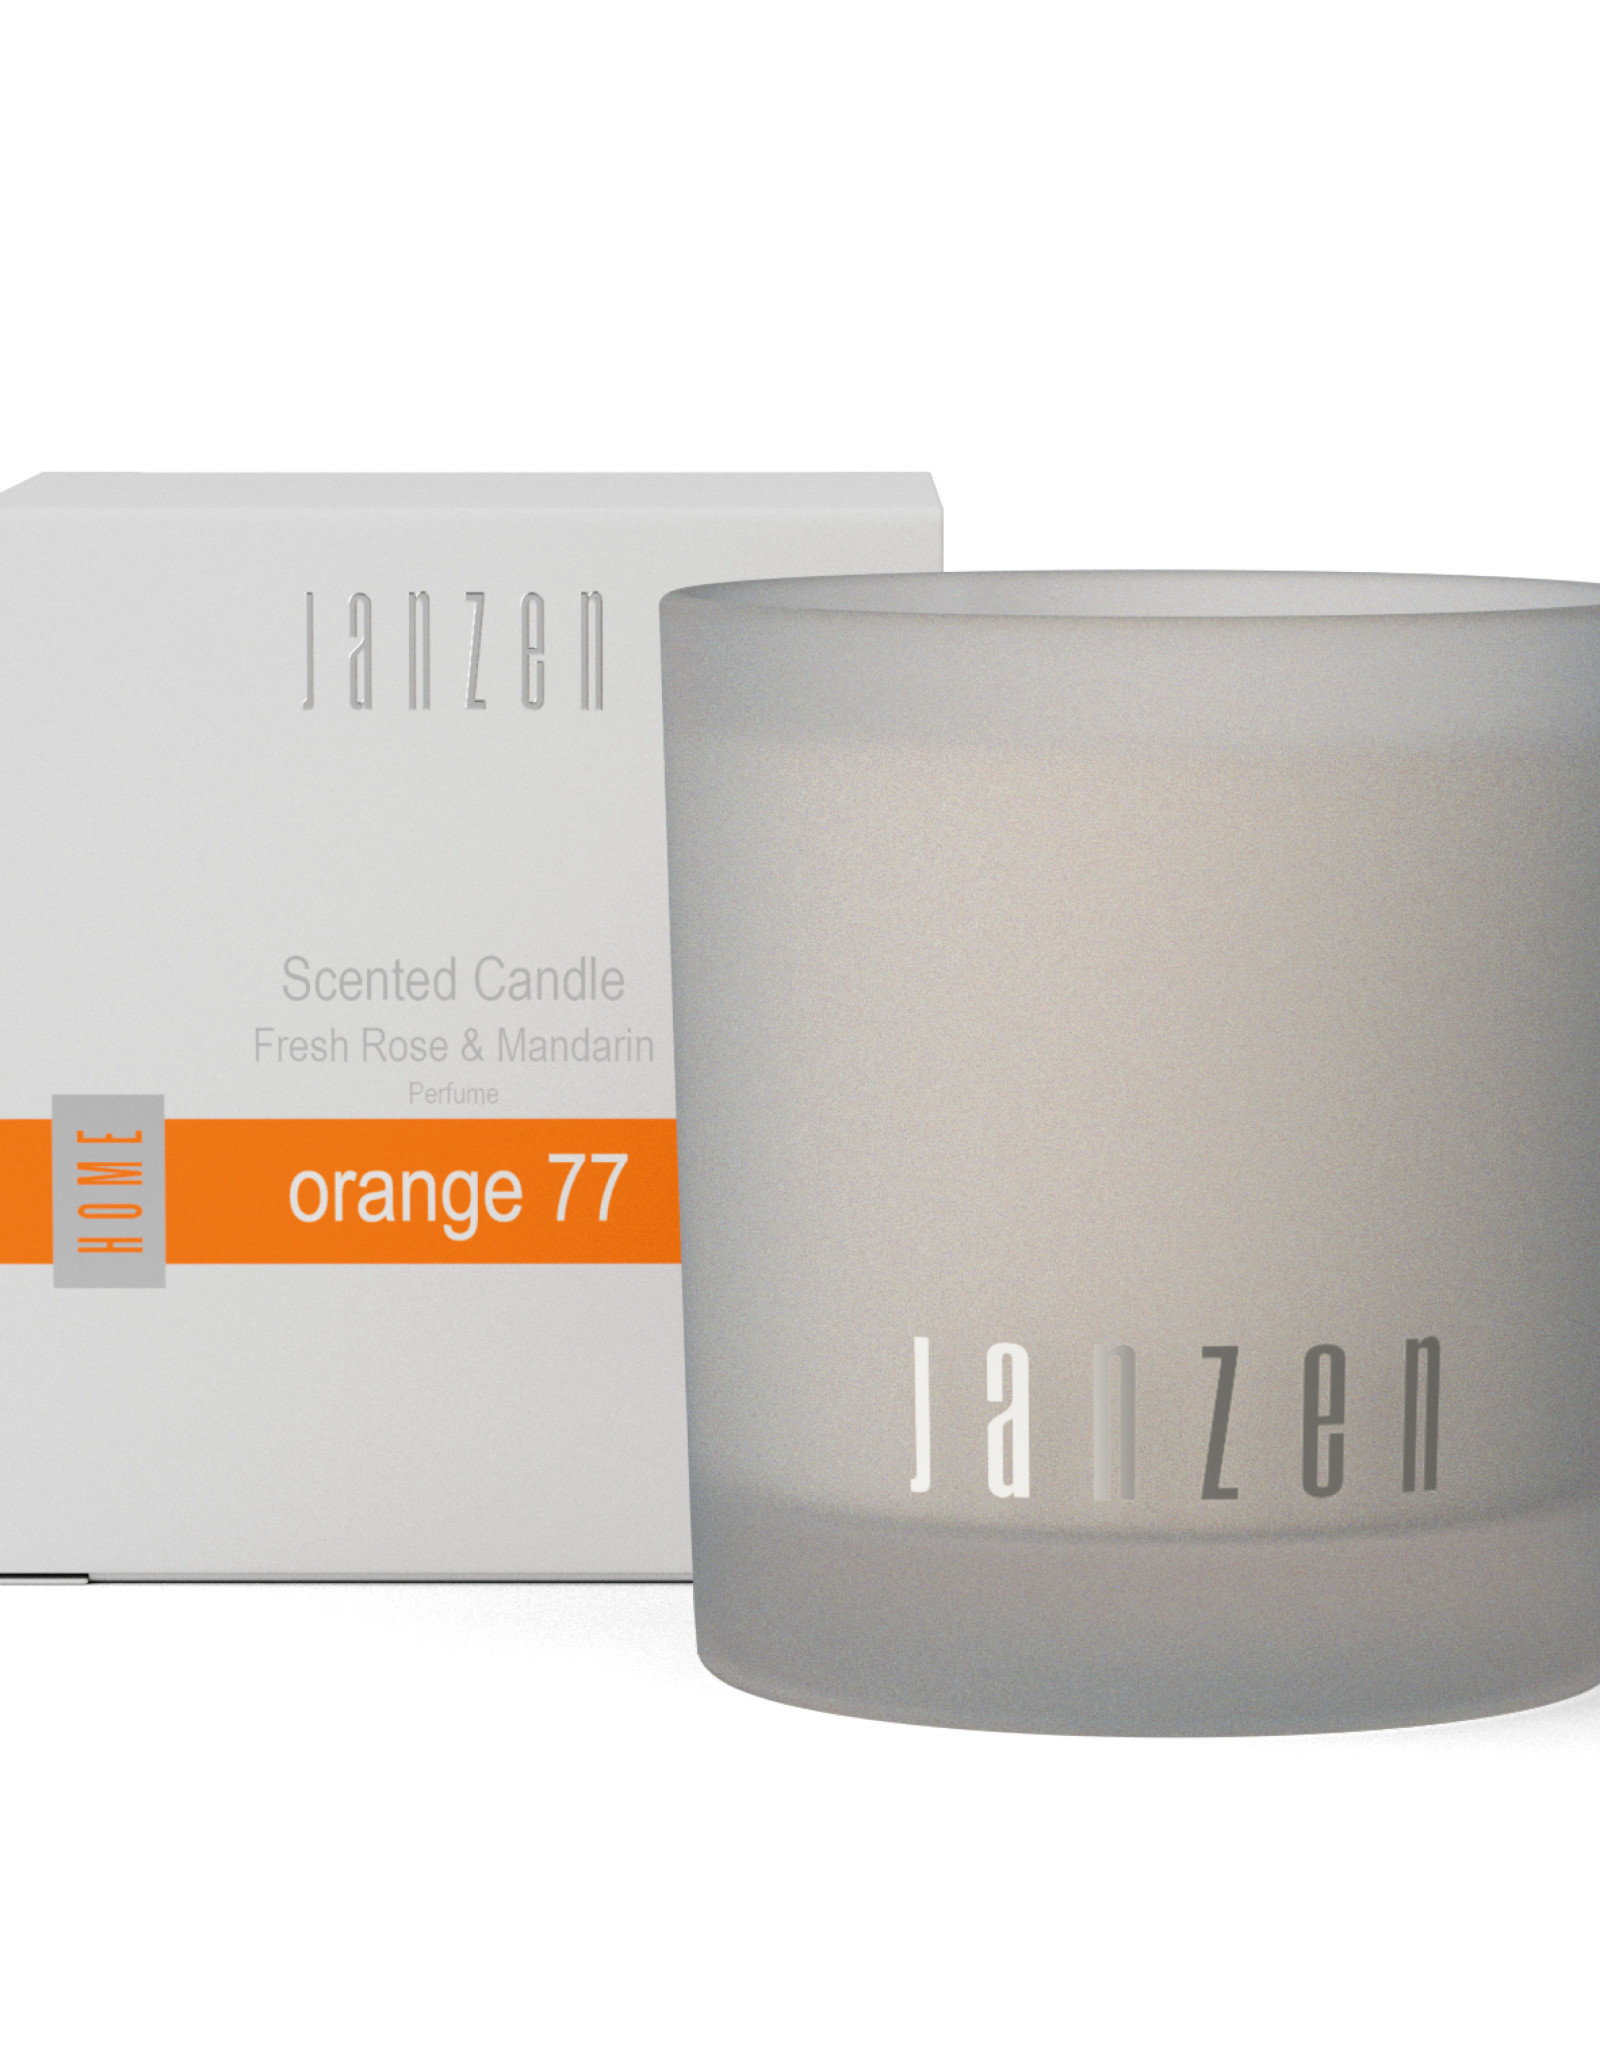 JANZEN Scented Candle Orange 77 - JANZEN